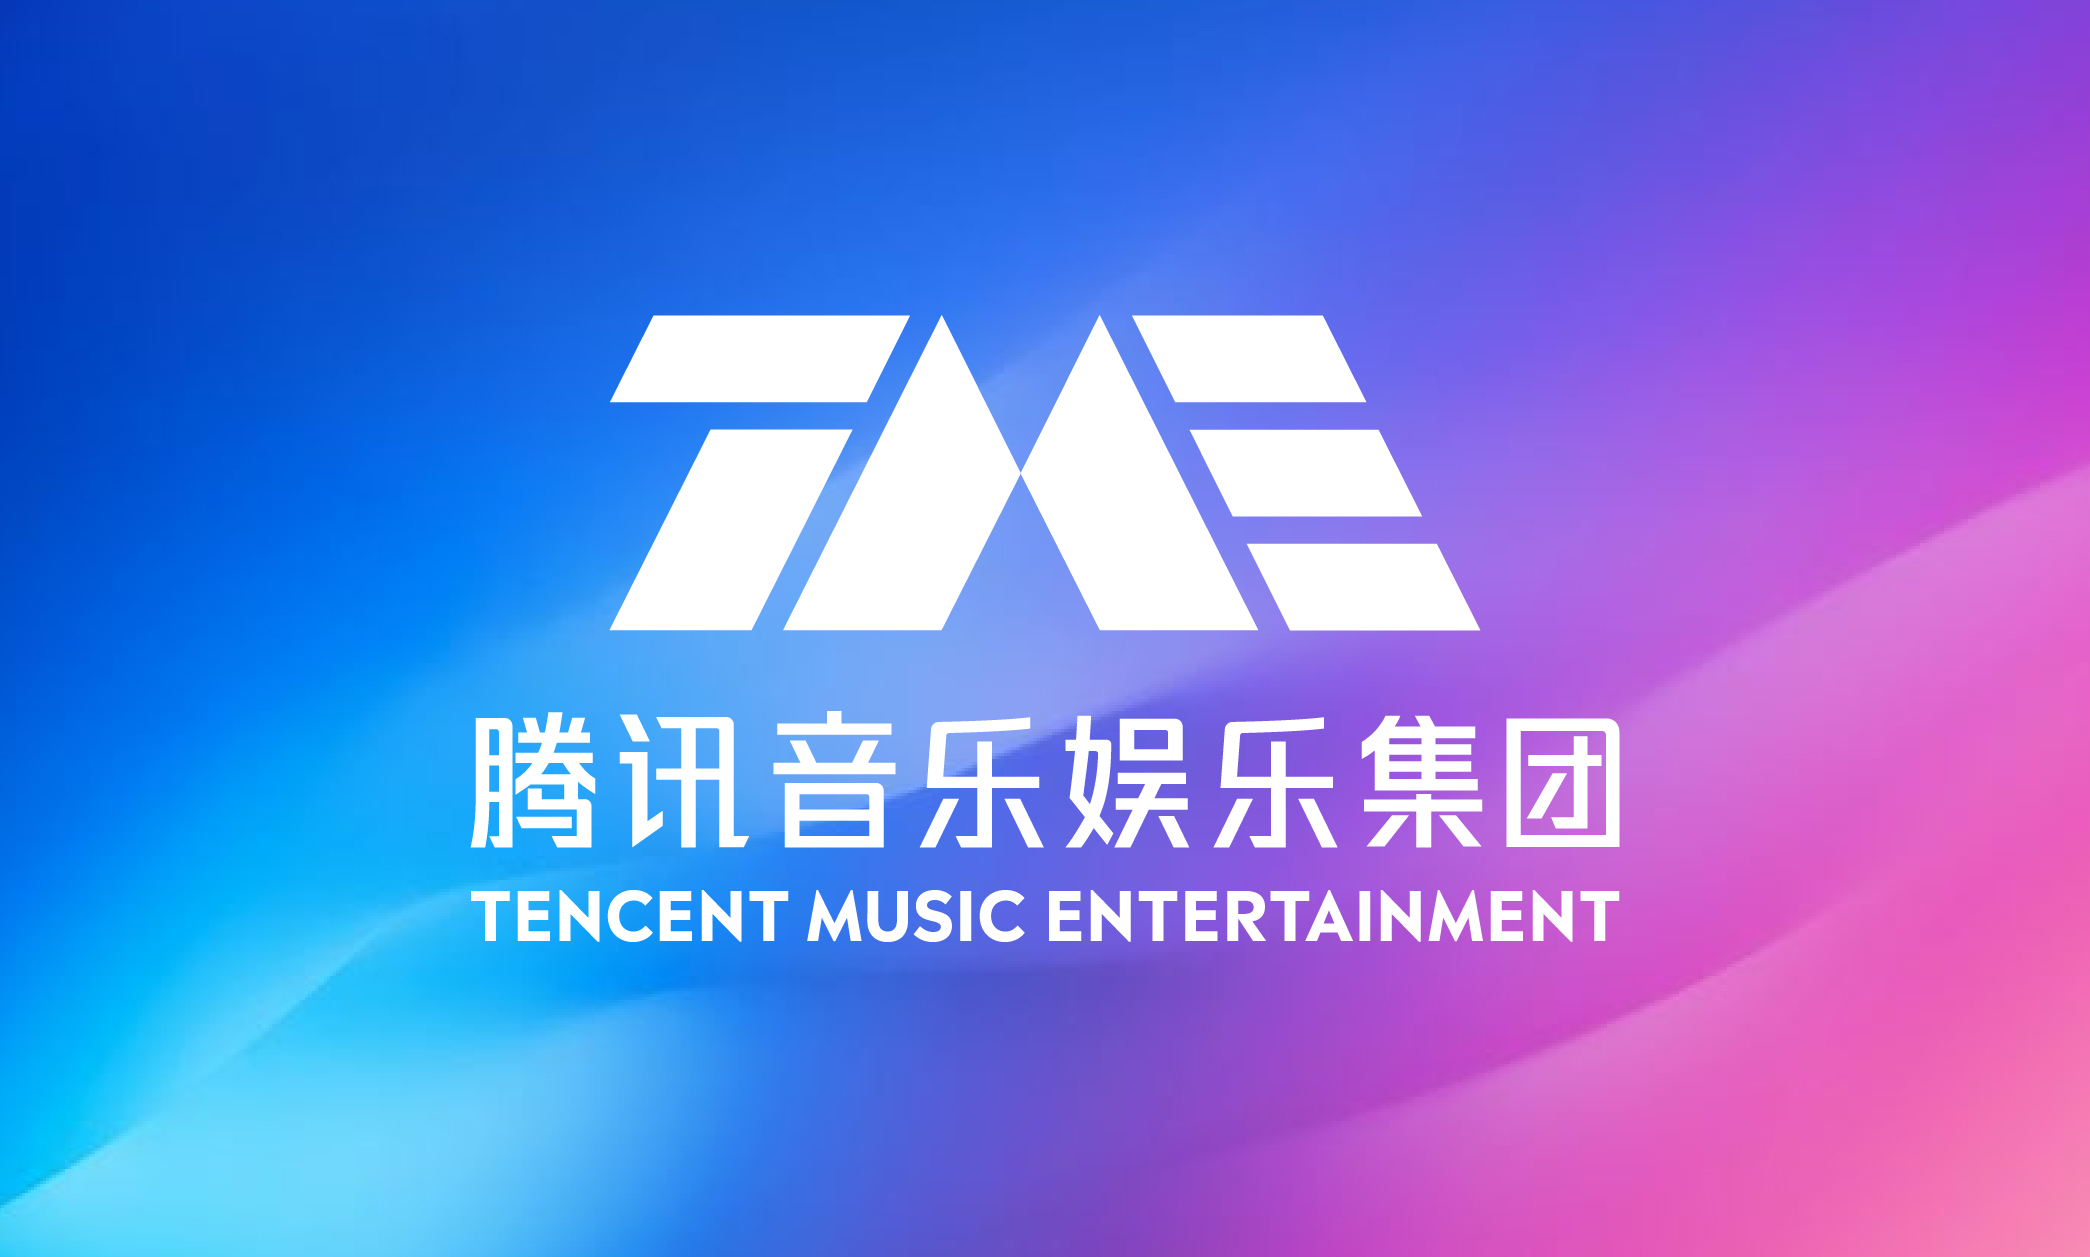 騰訊音樂娛樂集團宣佈管理層調整